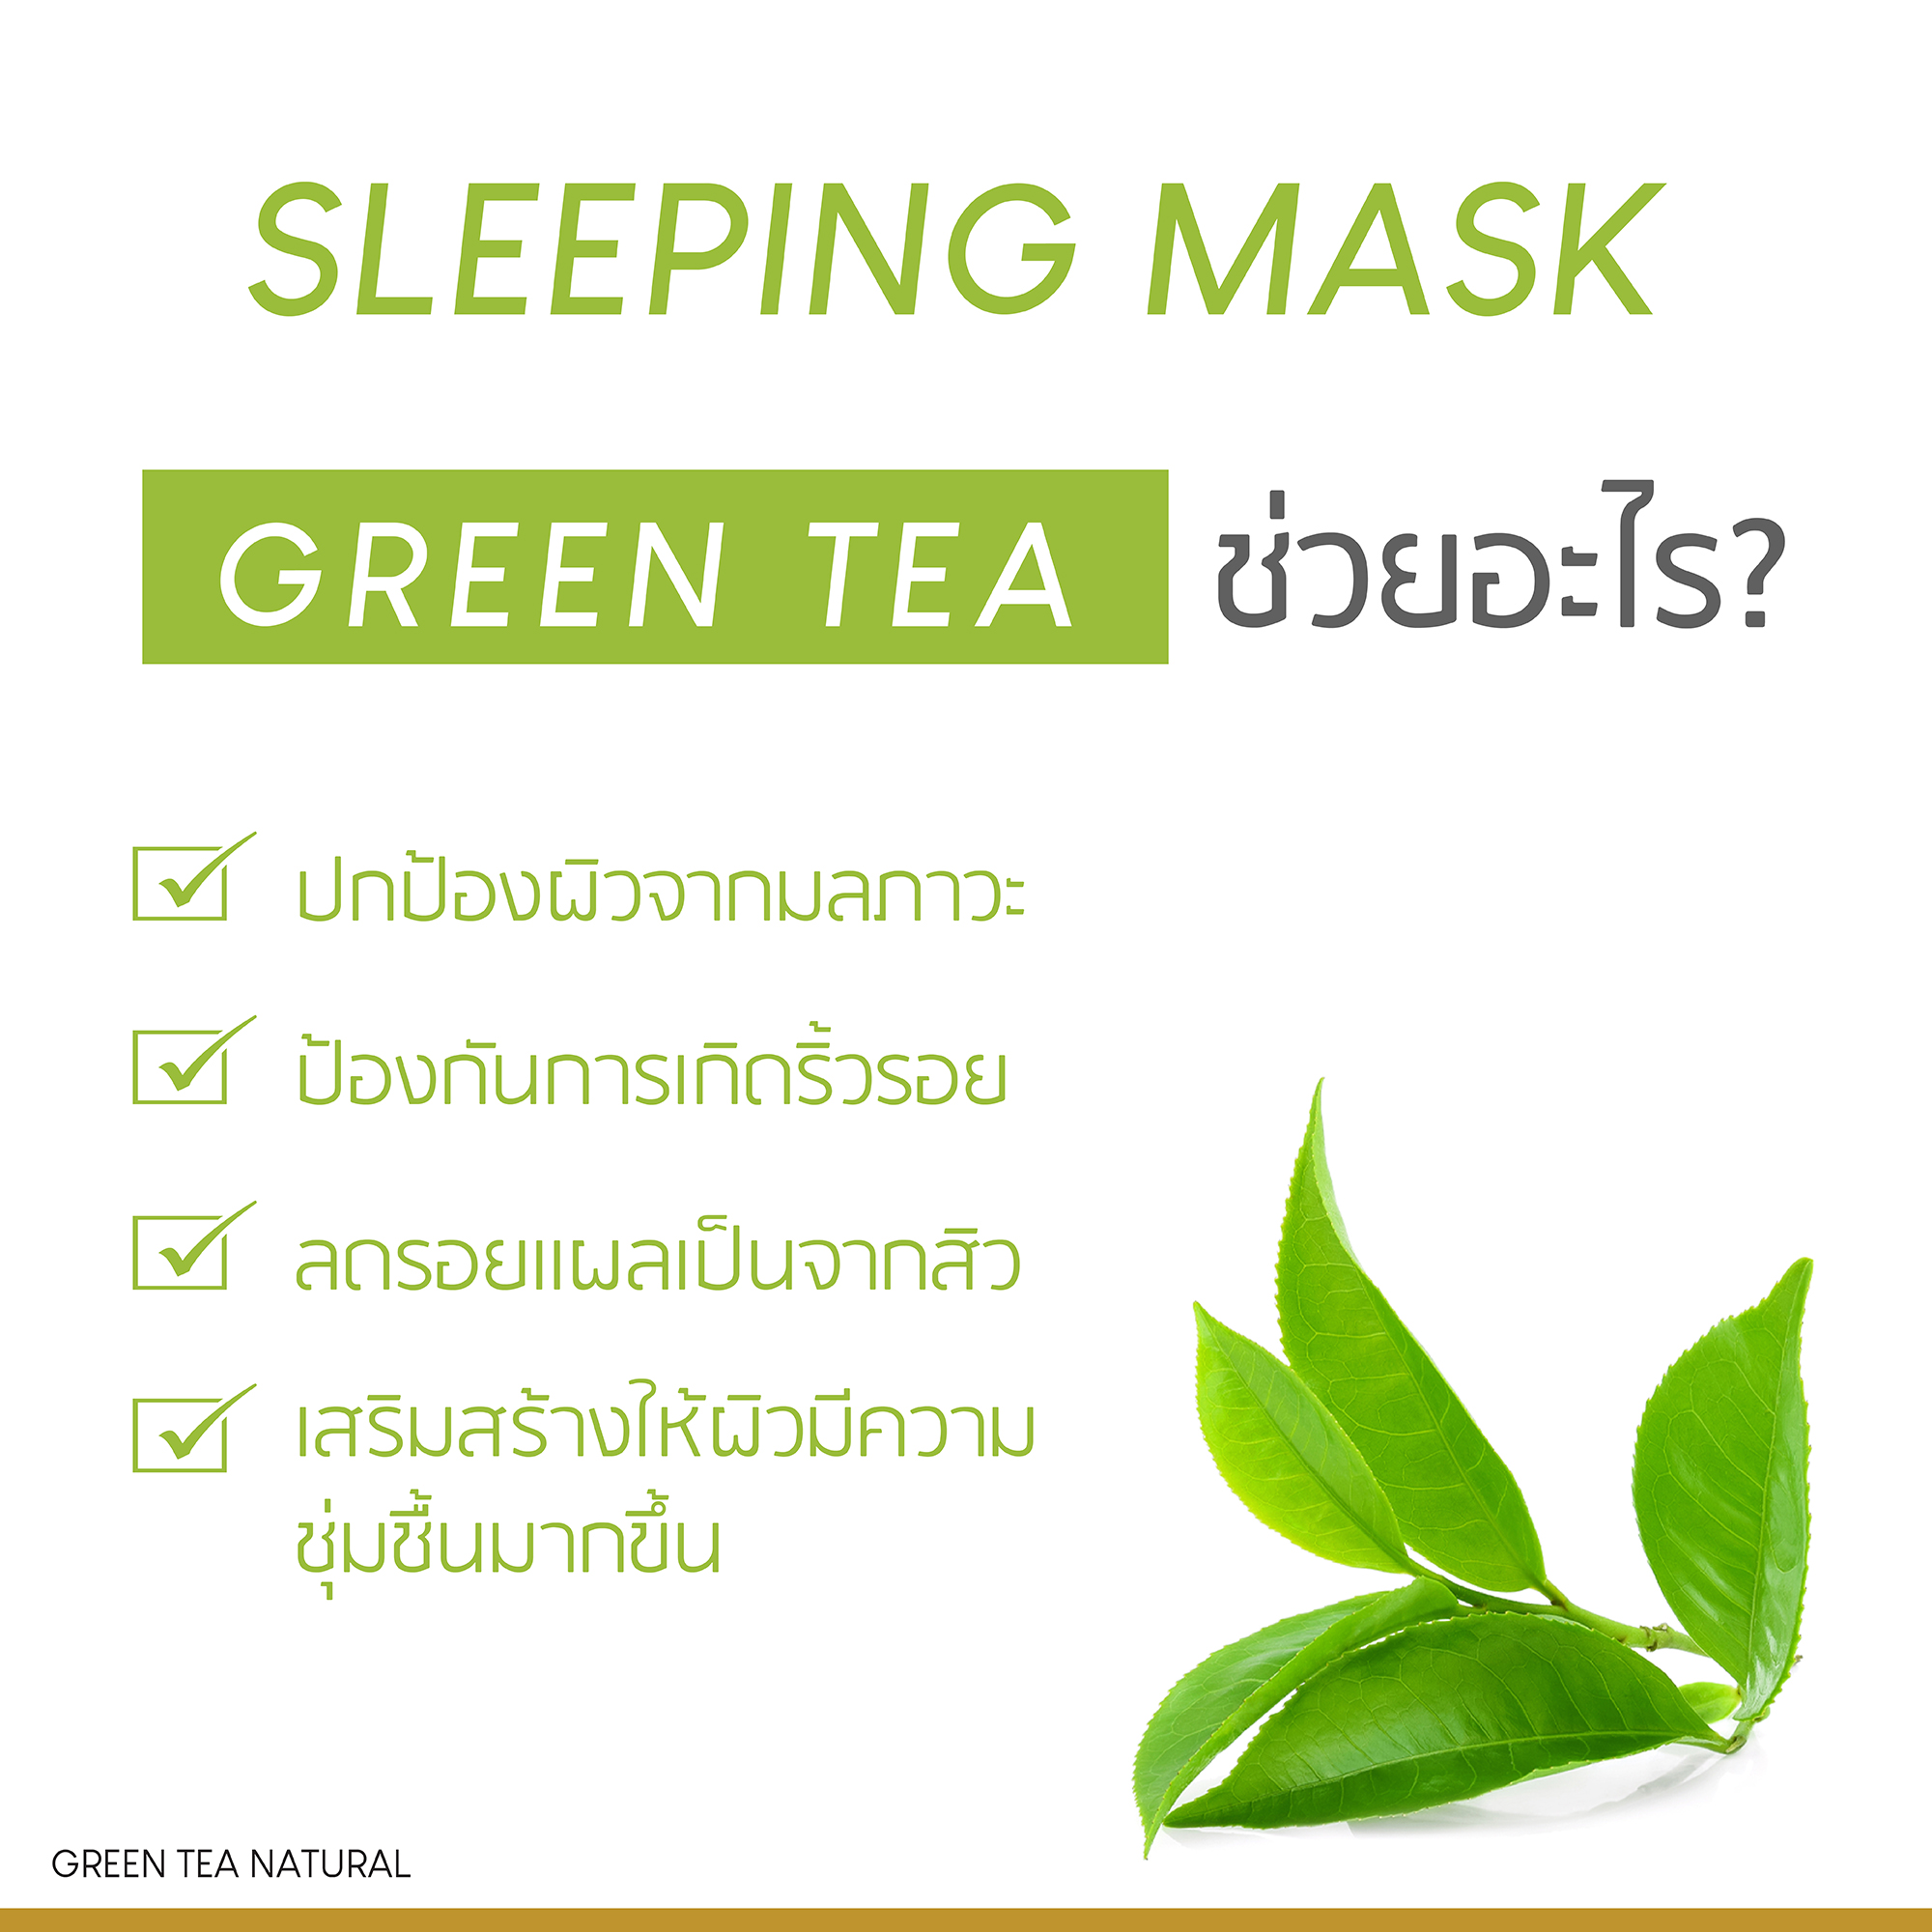 Green Tree Sleeping Mask 50g มาส์ชาเขียว ดีท็อกผิวข้ามคืน ชะล้างสิ่งสกปรกตกค้าง ฟื้นคืนผิวให้มีสุขภาพดี